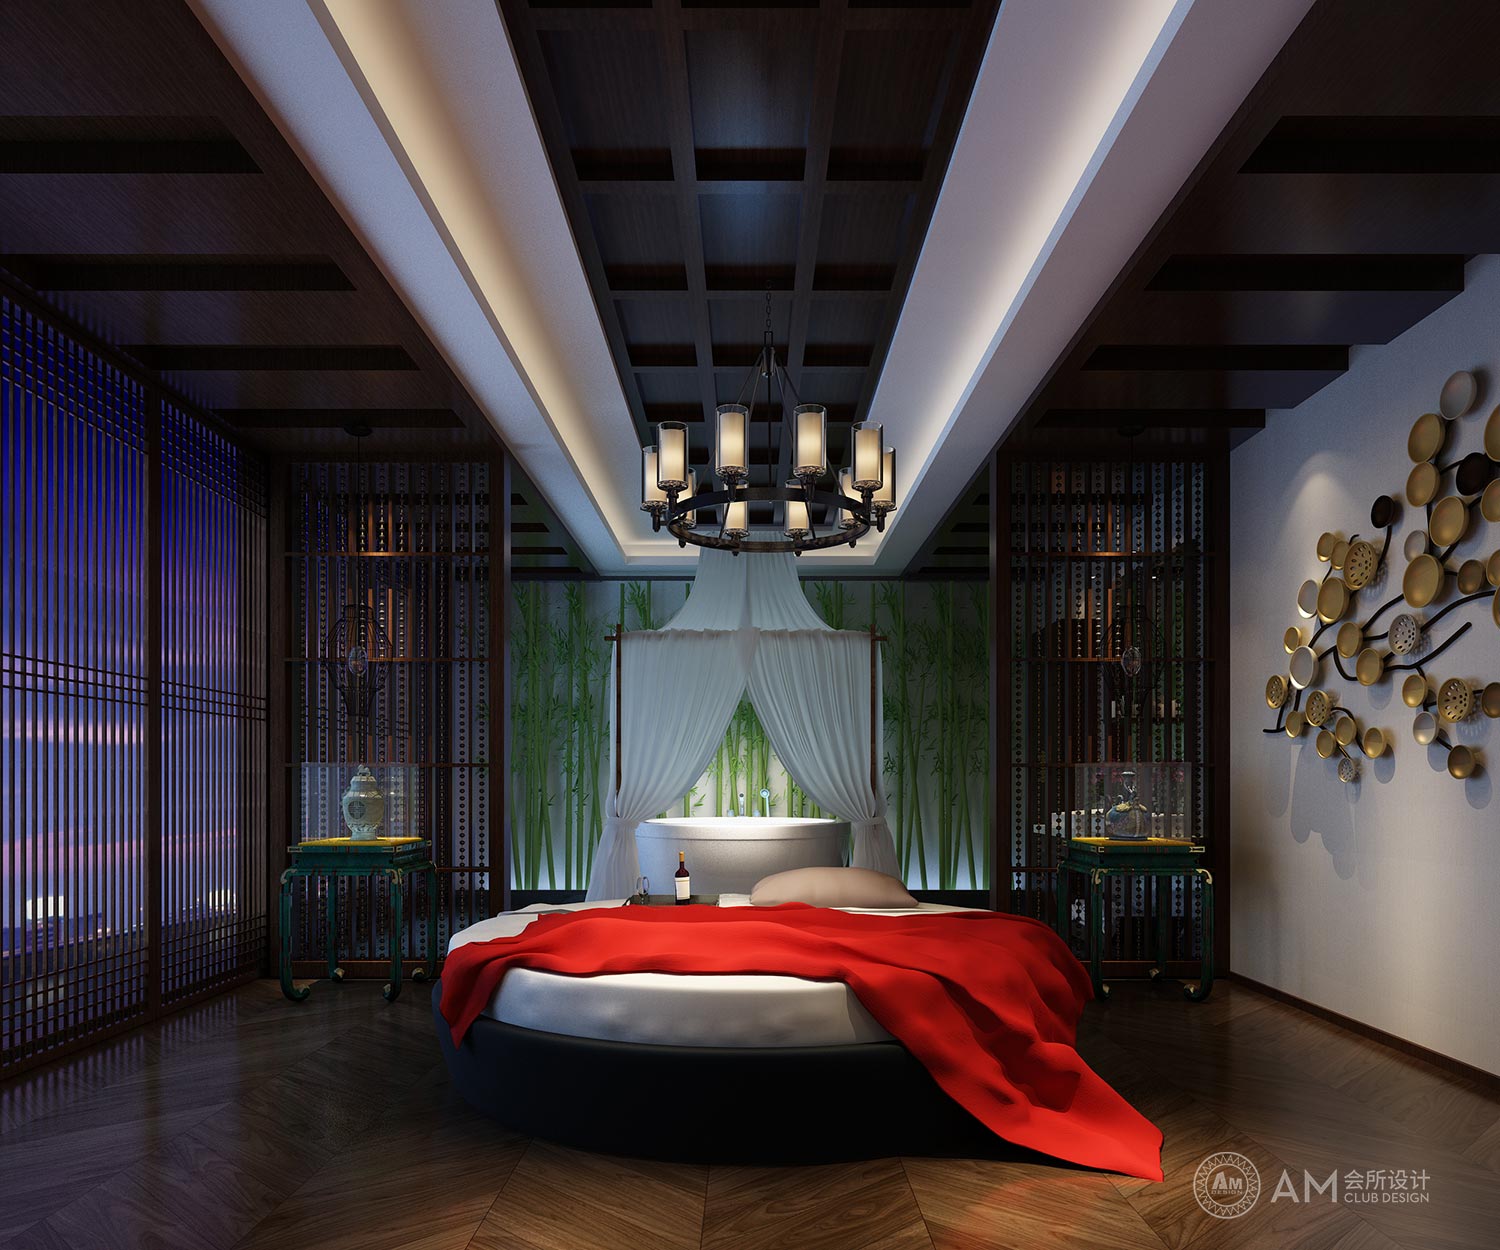 AM DESIGN | Spa room design of qilinhui Top Spa Club